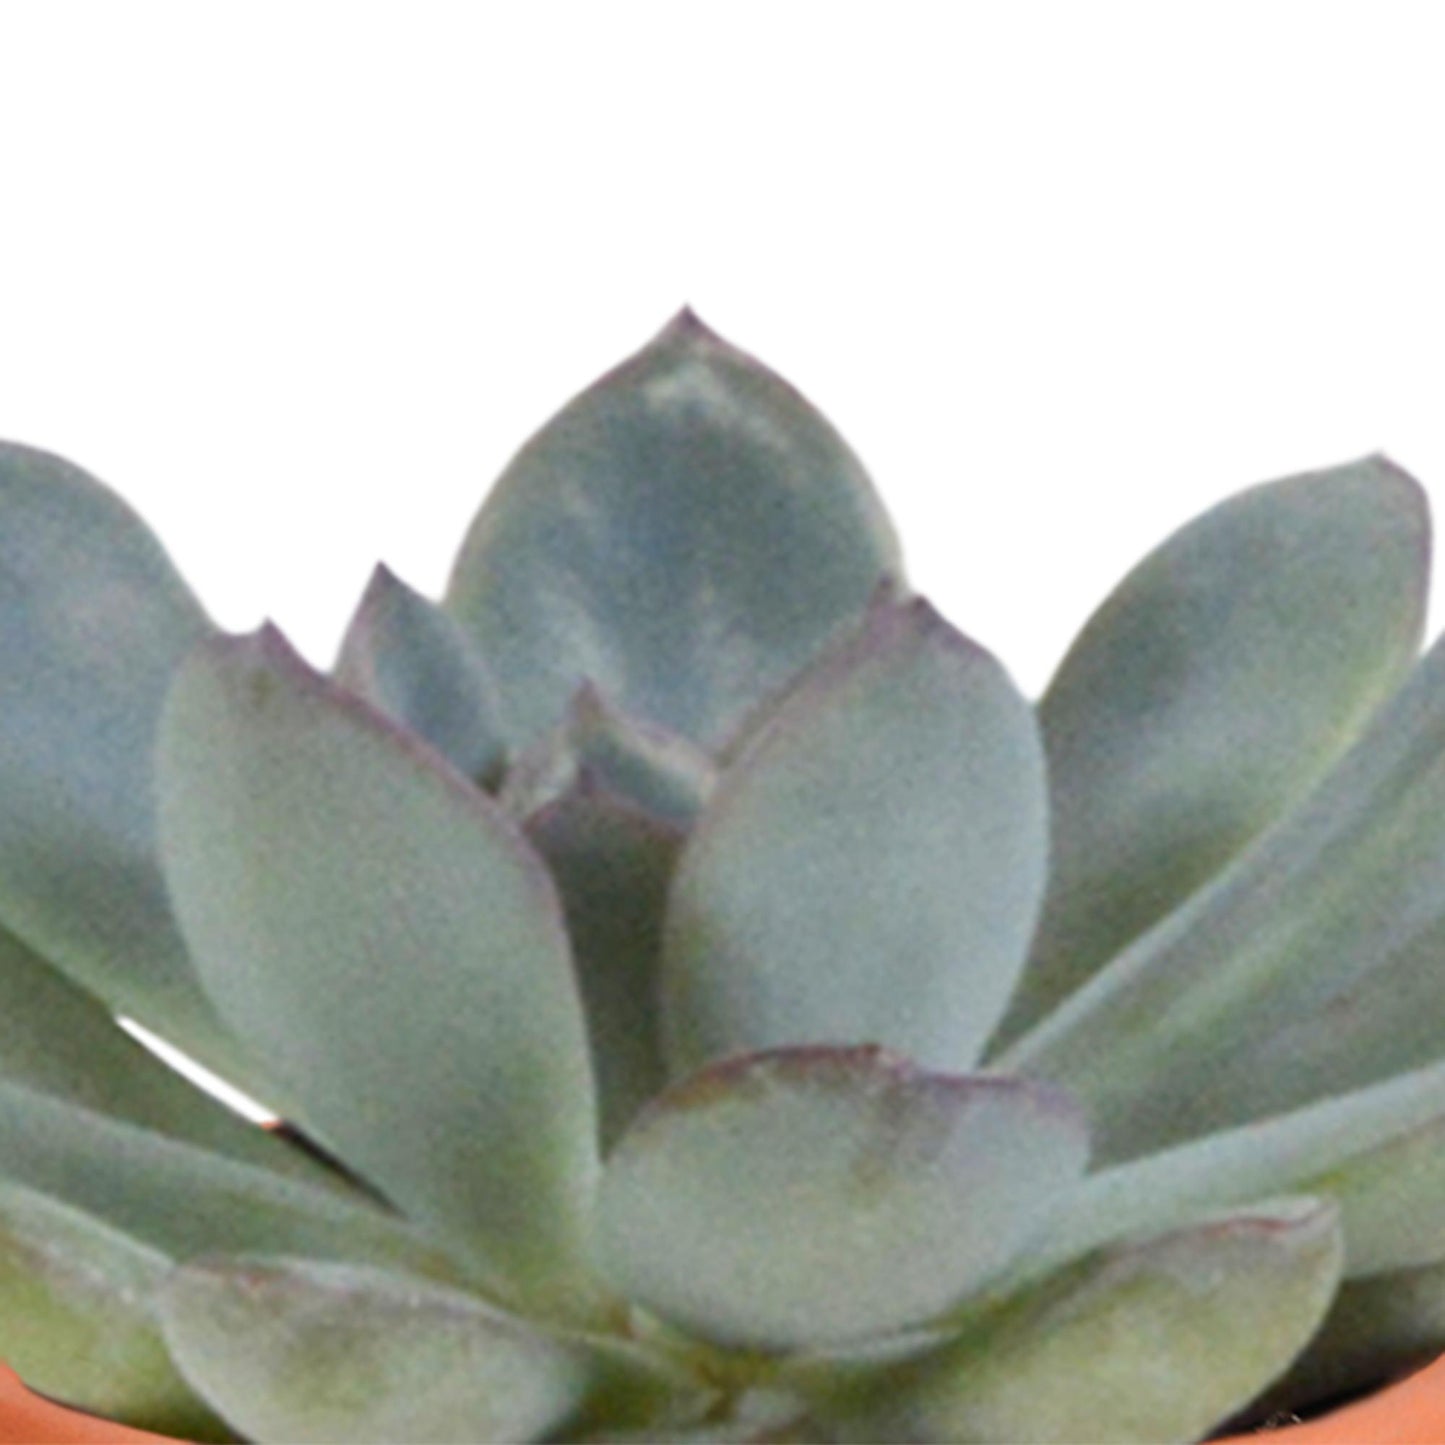 Cactus en vetplanten mix 5.5 cm in terracotta pot | 15 stuks